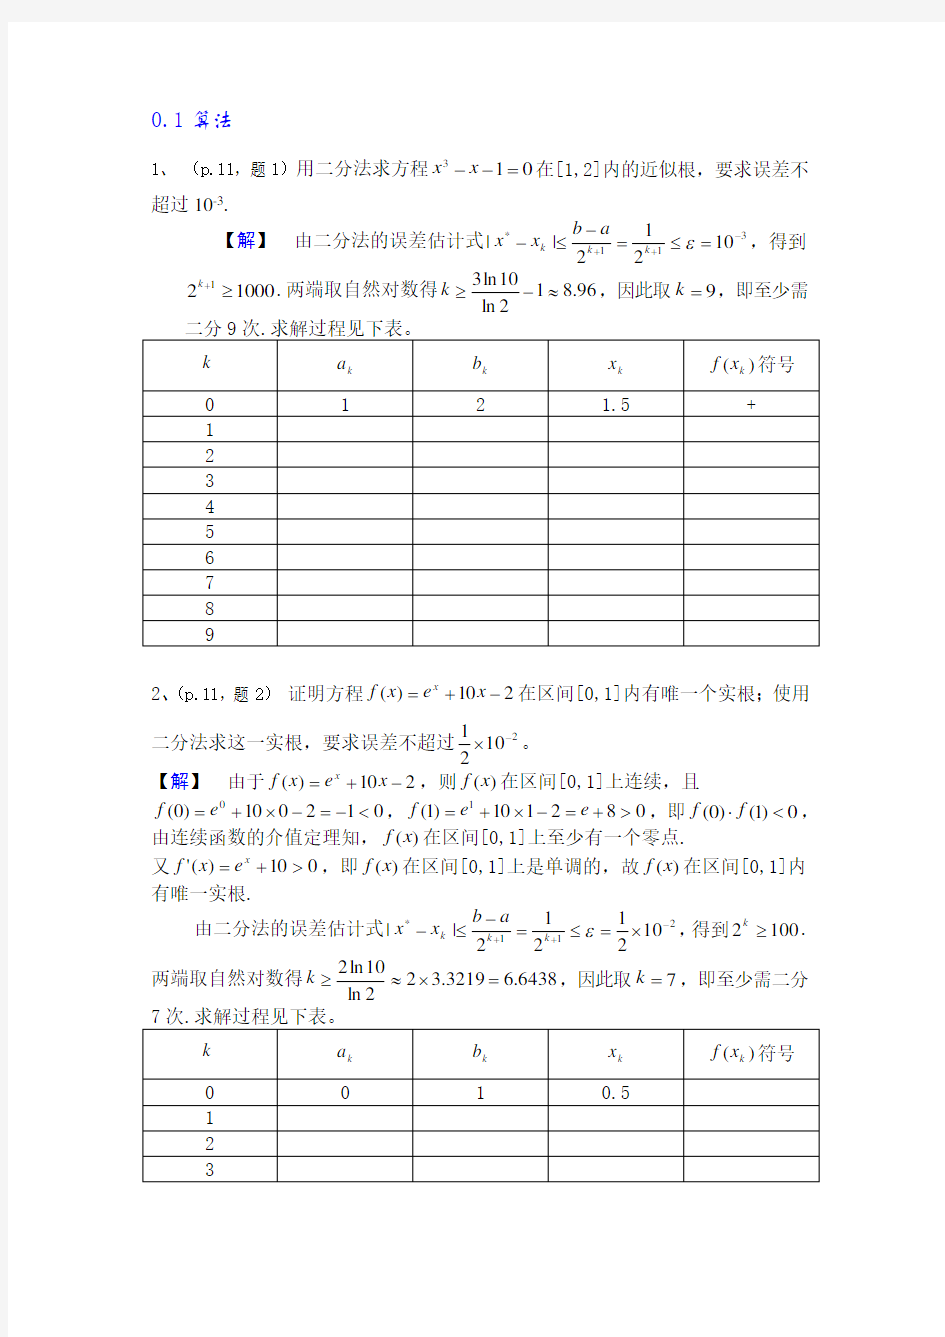 数值分析简明教程第二版课后习题答案(供参考)